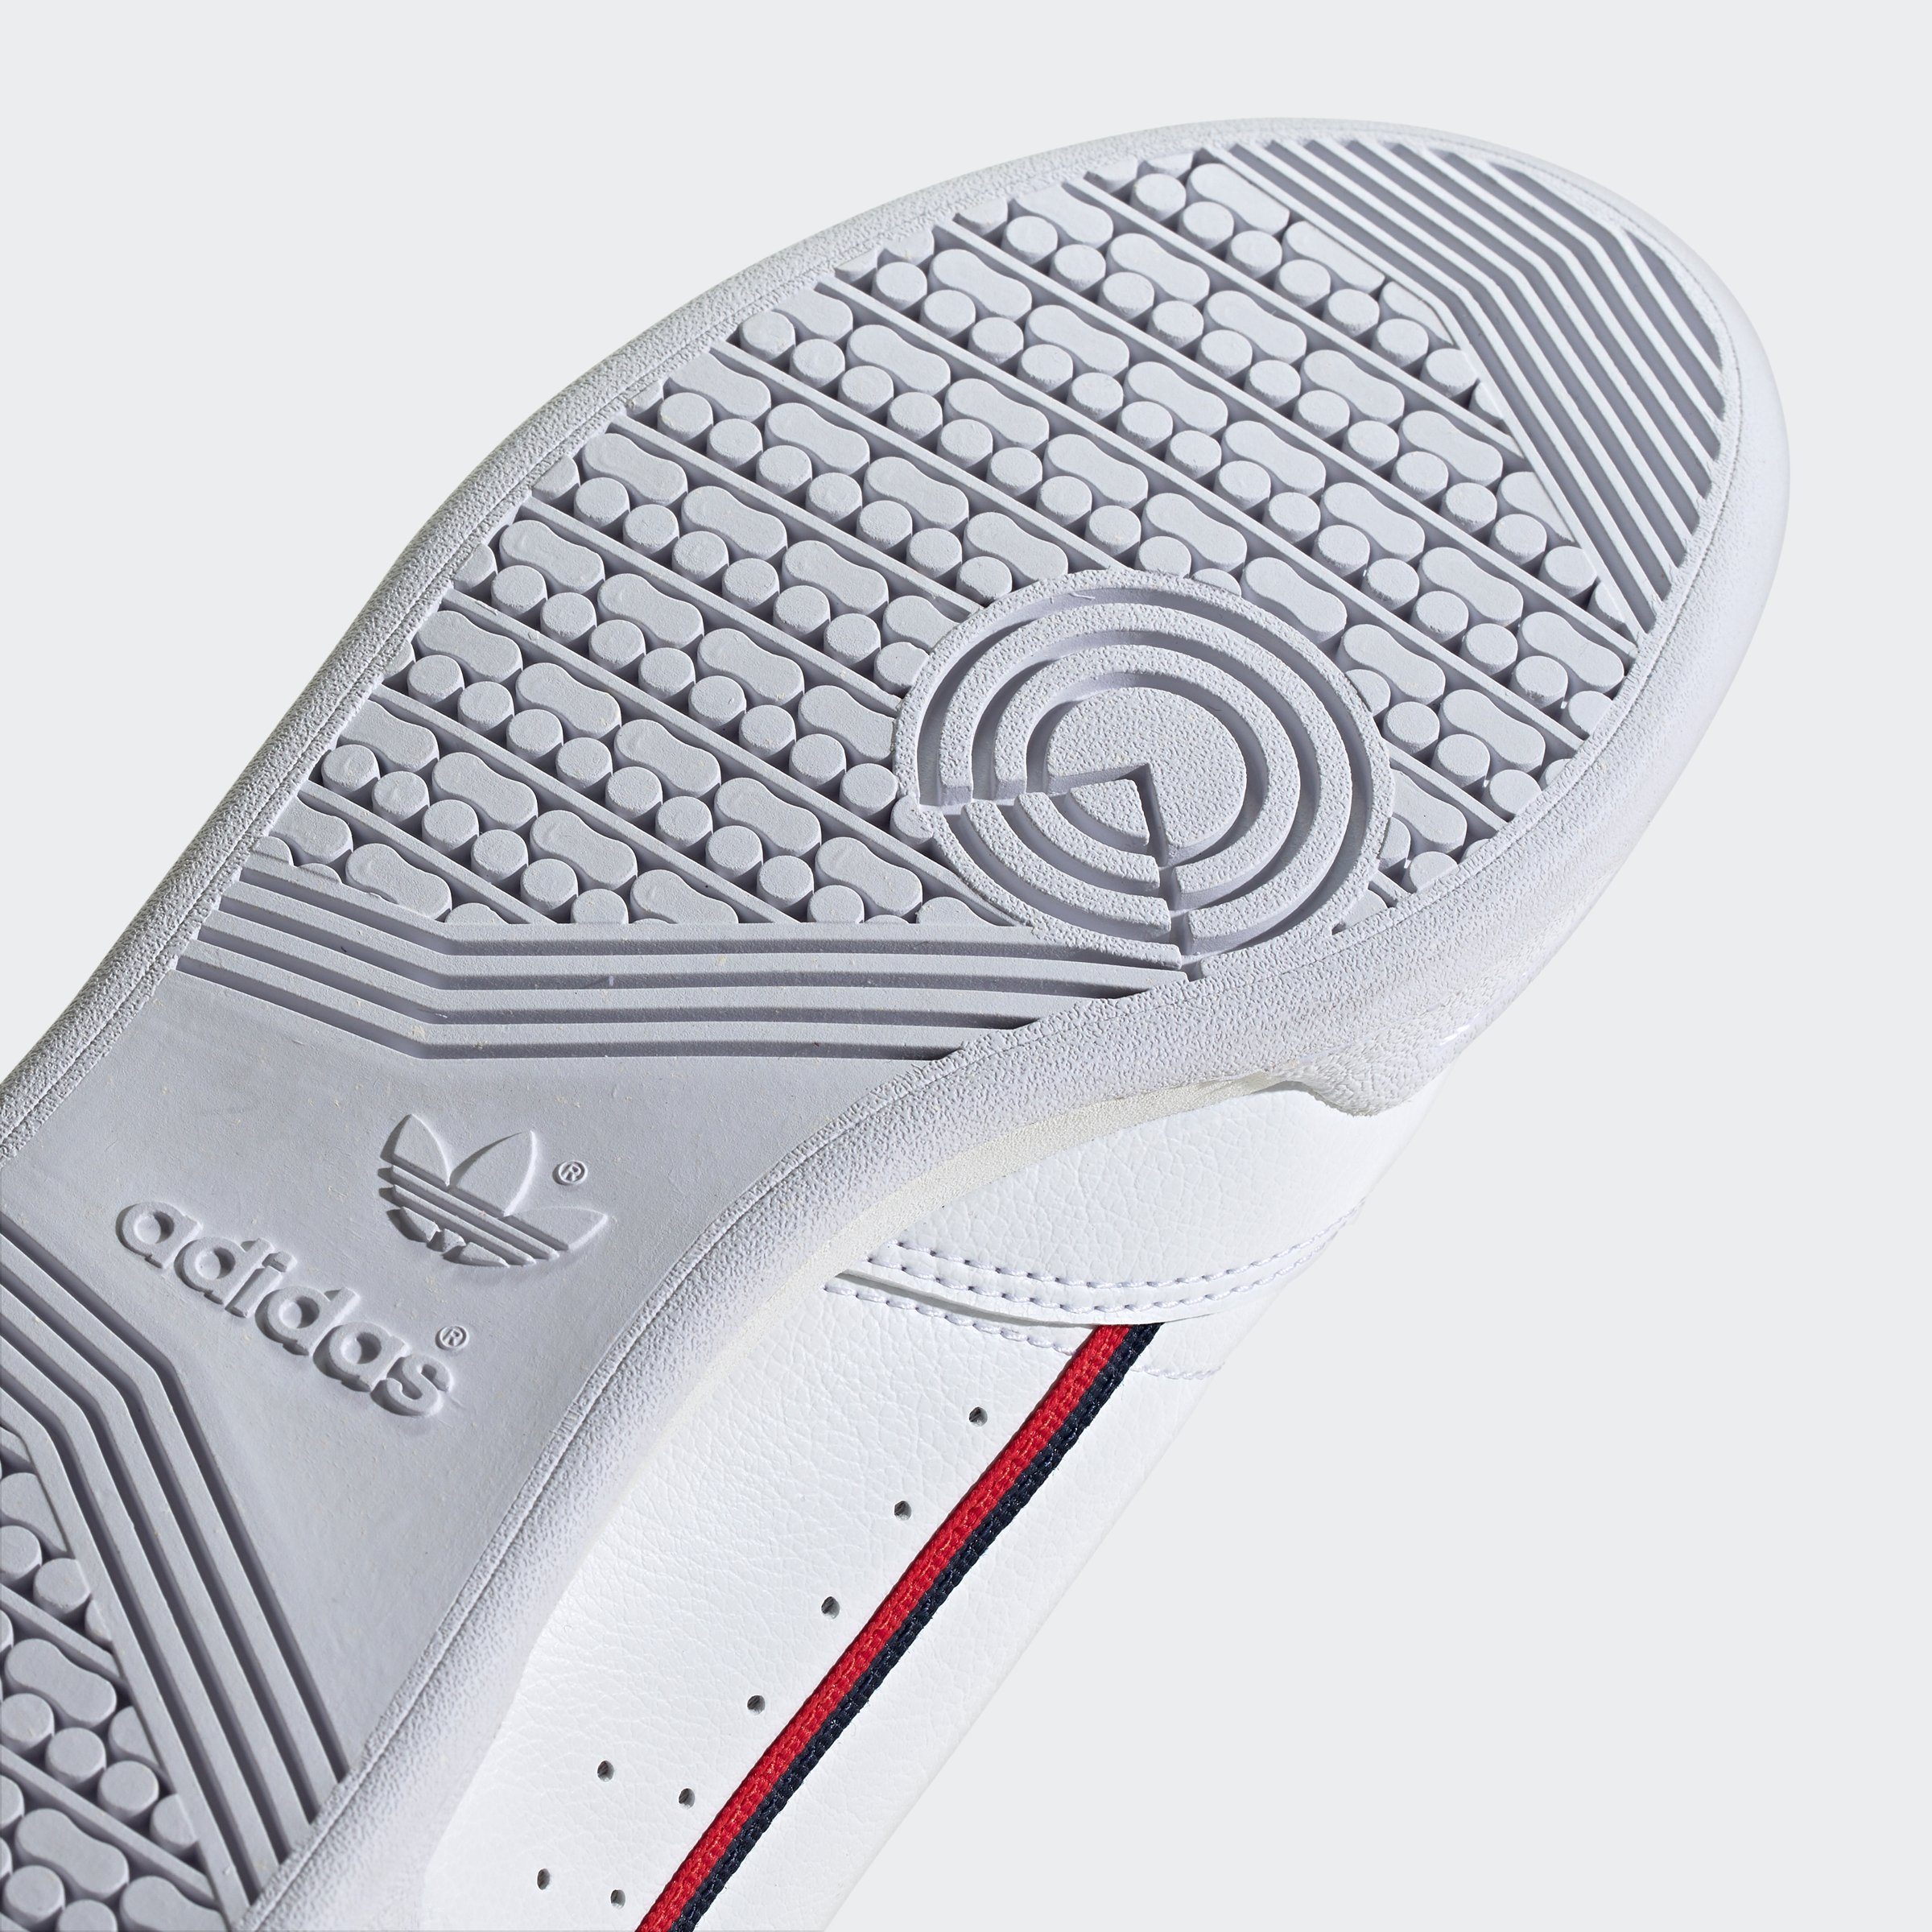 80 adidas VEGAN CONTINENTAL Sneaker Originals FTWWHT-CONAVY-SCARLE